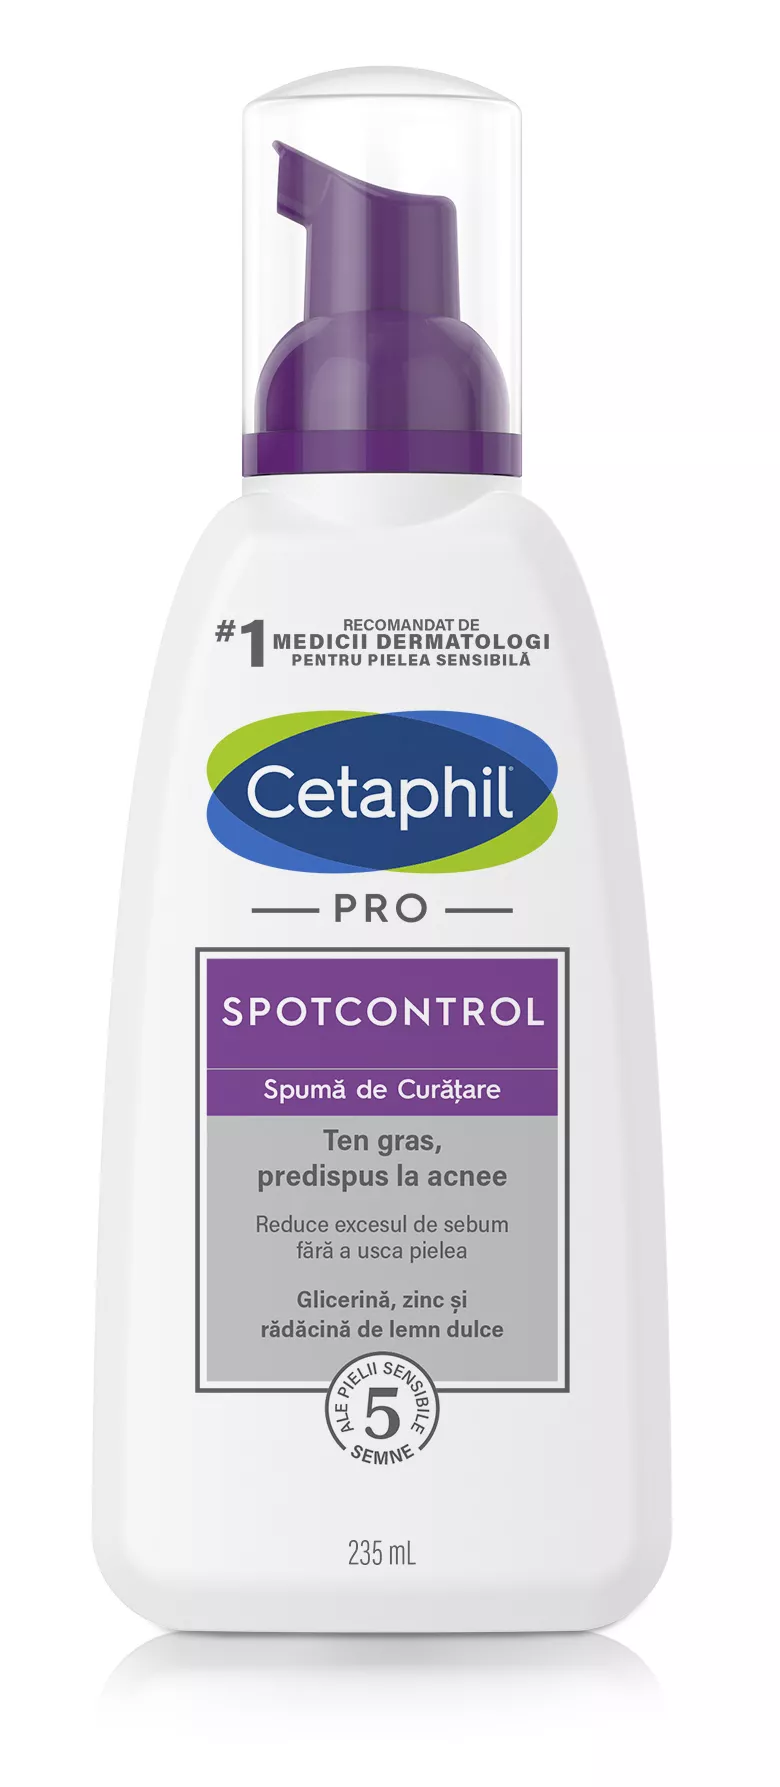 Cetaphil Pro Spot Control spuma de curatare x 235ml, [],medik-on.ro